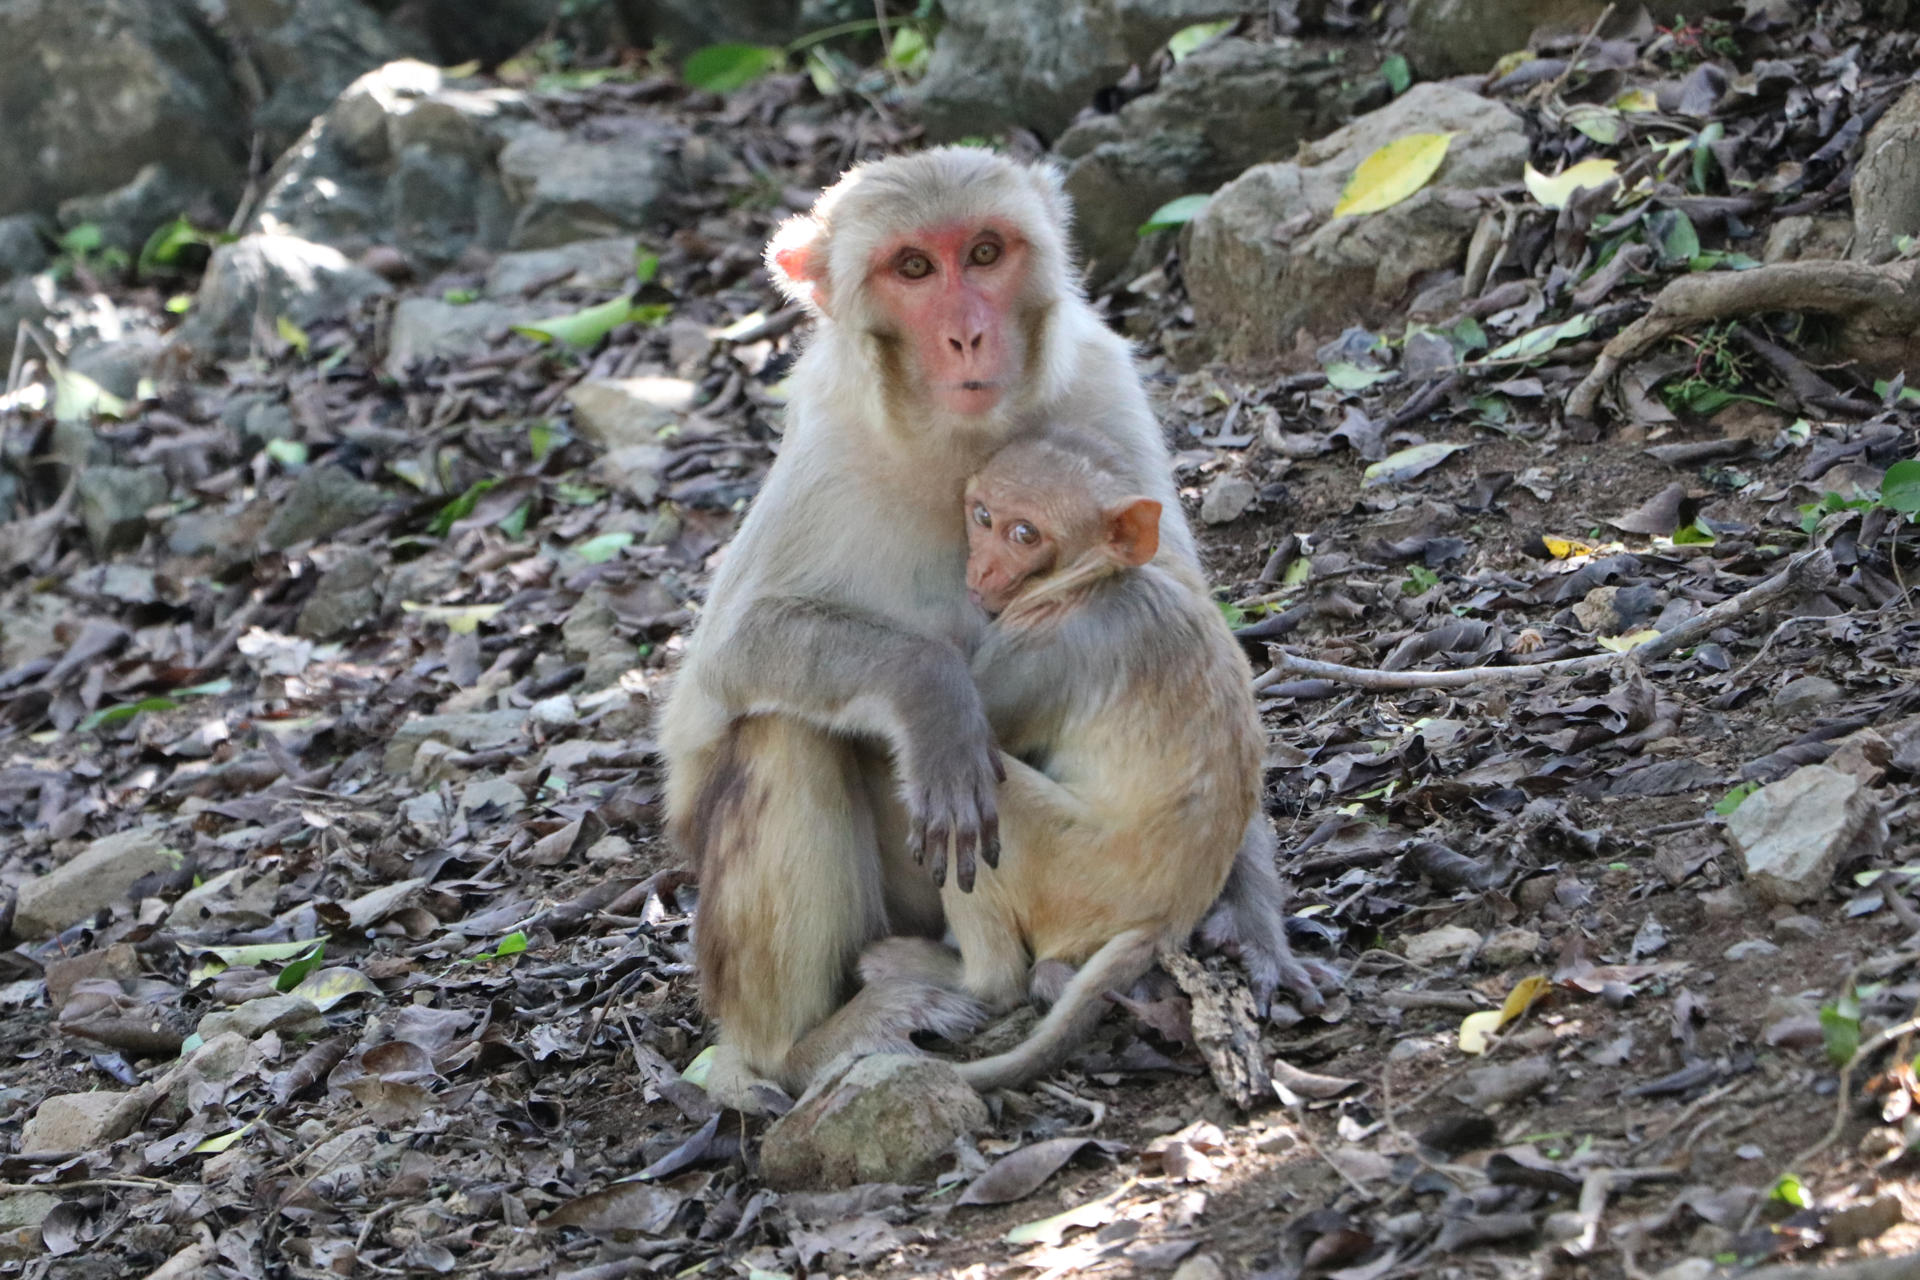 Fotografía cedida por Kandra Cruz, que muestra dos monos, en el Cayo Santiago (Puerto Rico). EFE/ Kandra Cruz